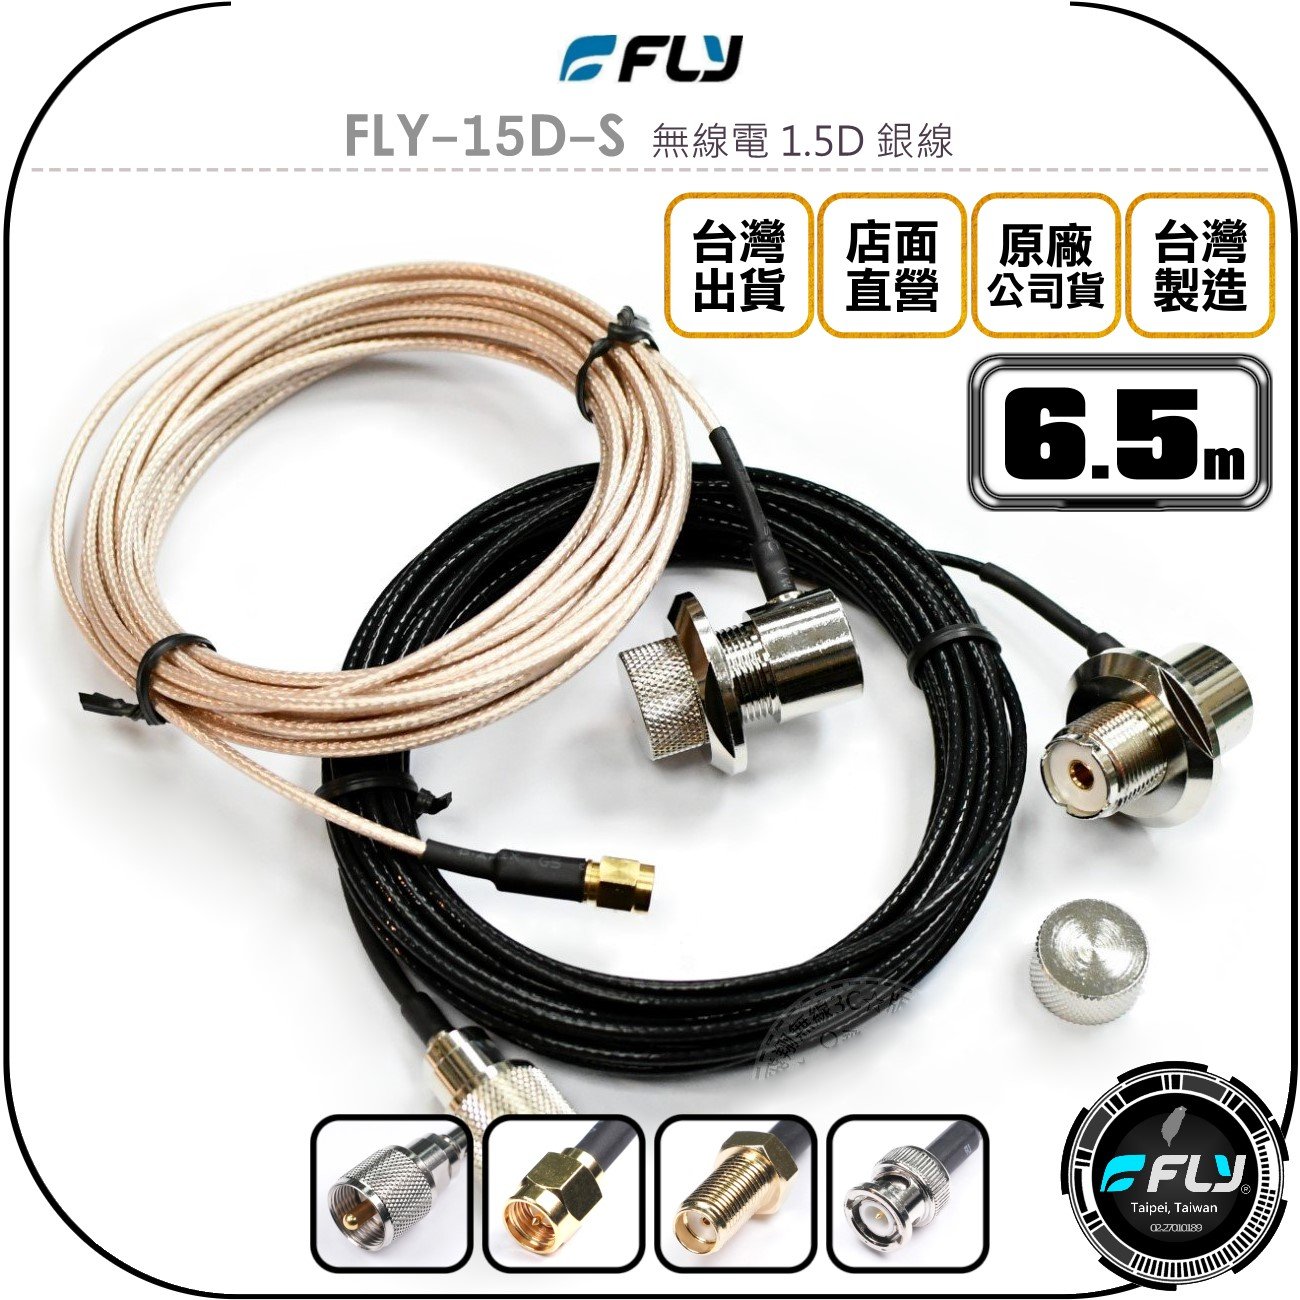 《飛翔無線3C》FLY FLY-15D-S 無線電 1.5D 銀線 6.5m◉公司貨◉訊號線◉對講機收發◉車機外接傳輸